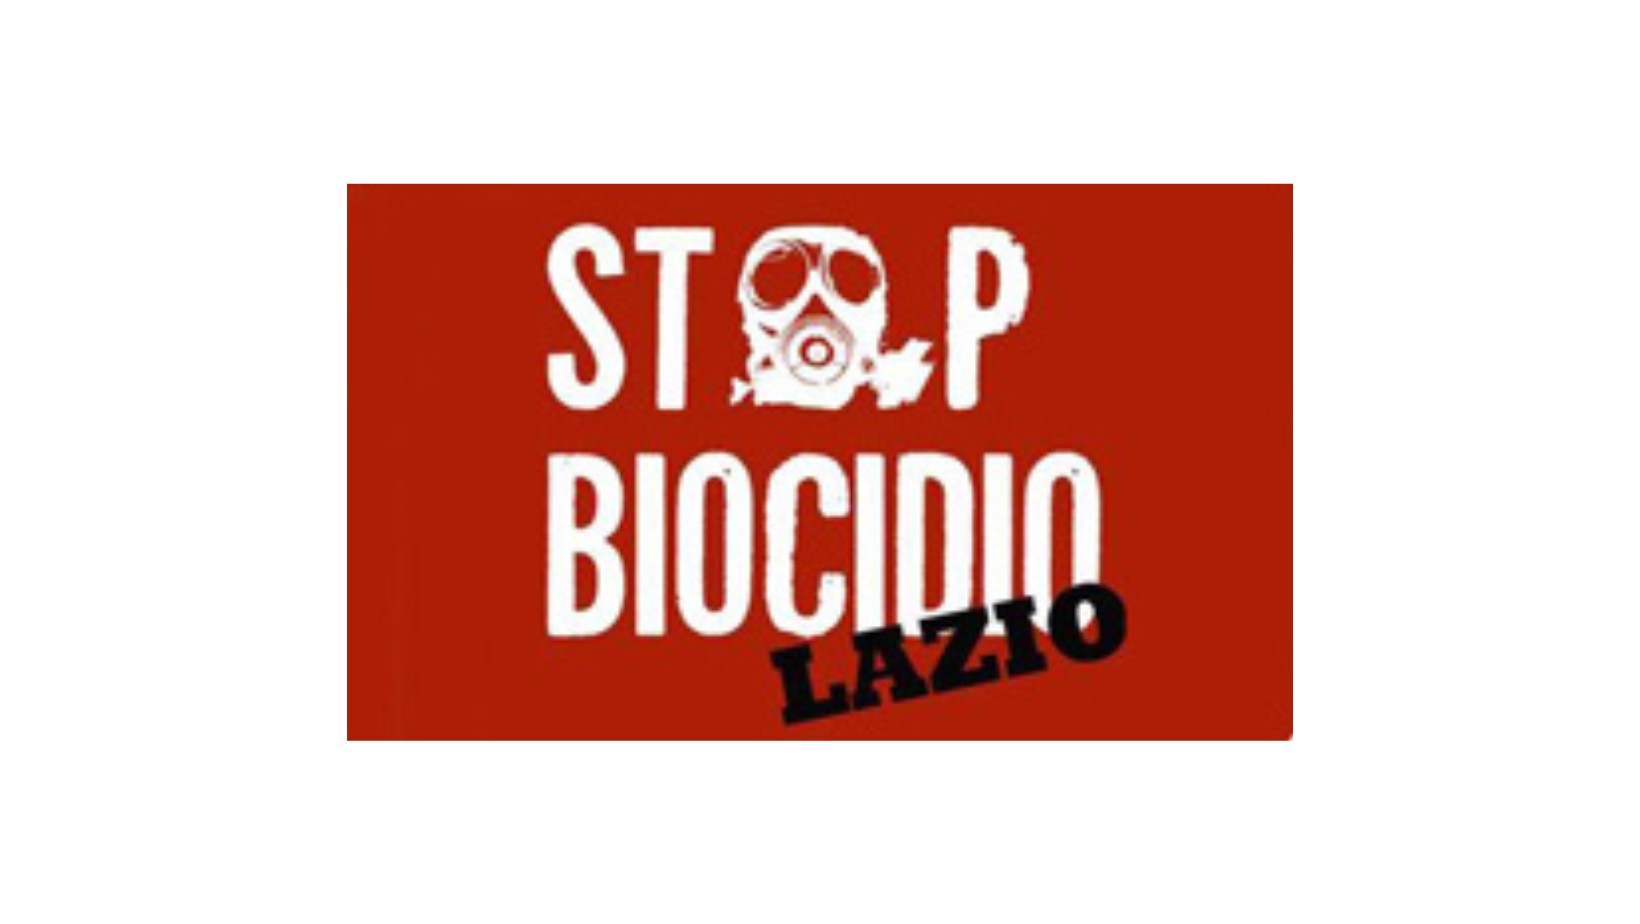 Sto biocidi Lazio